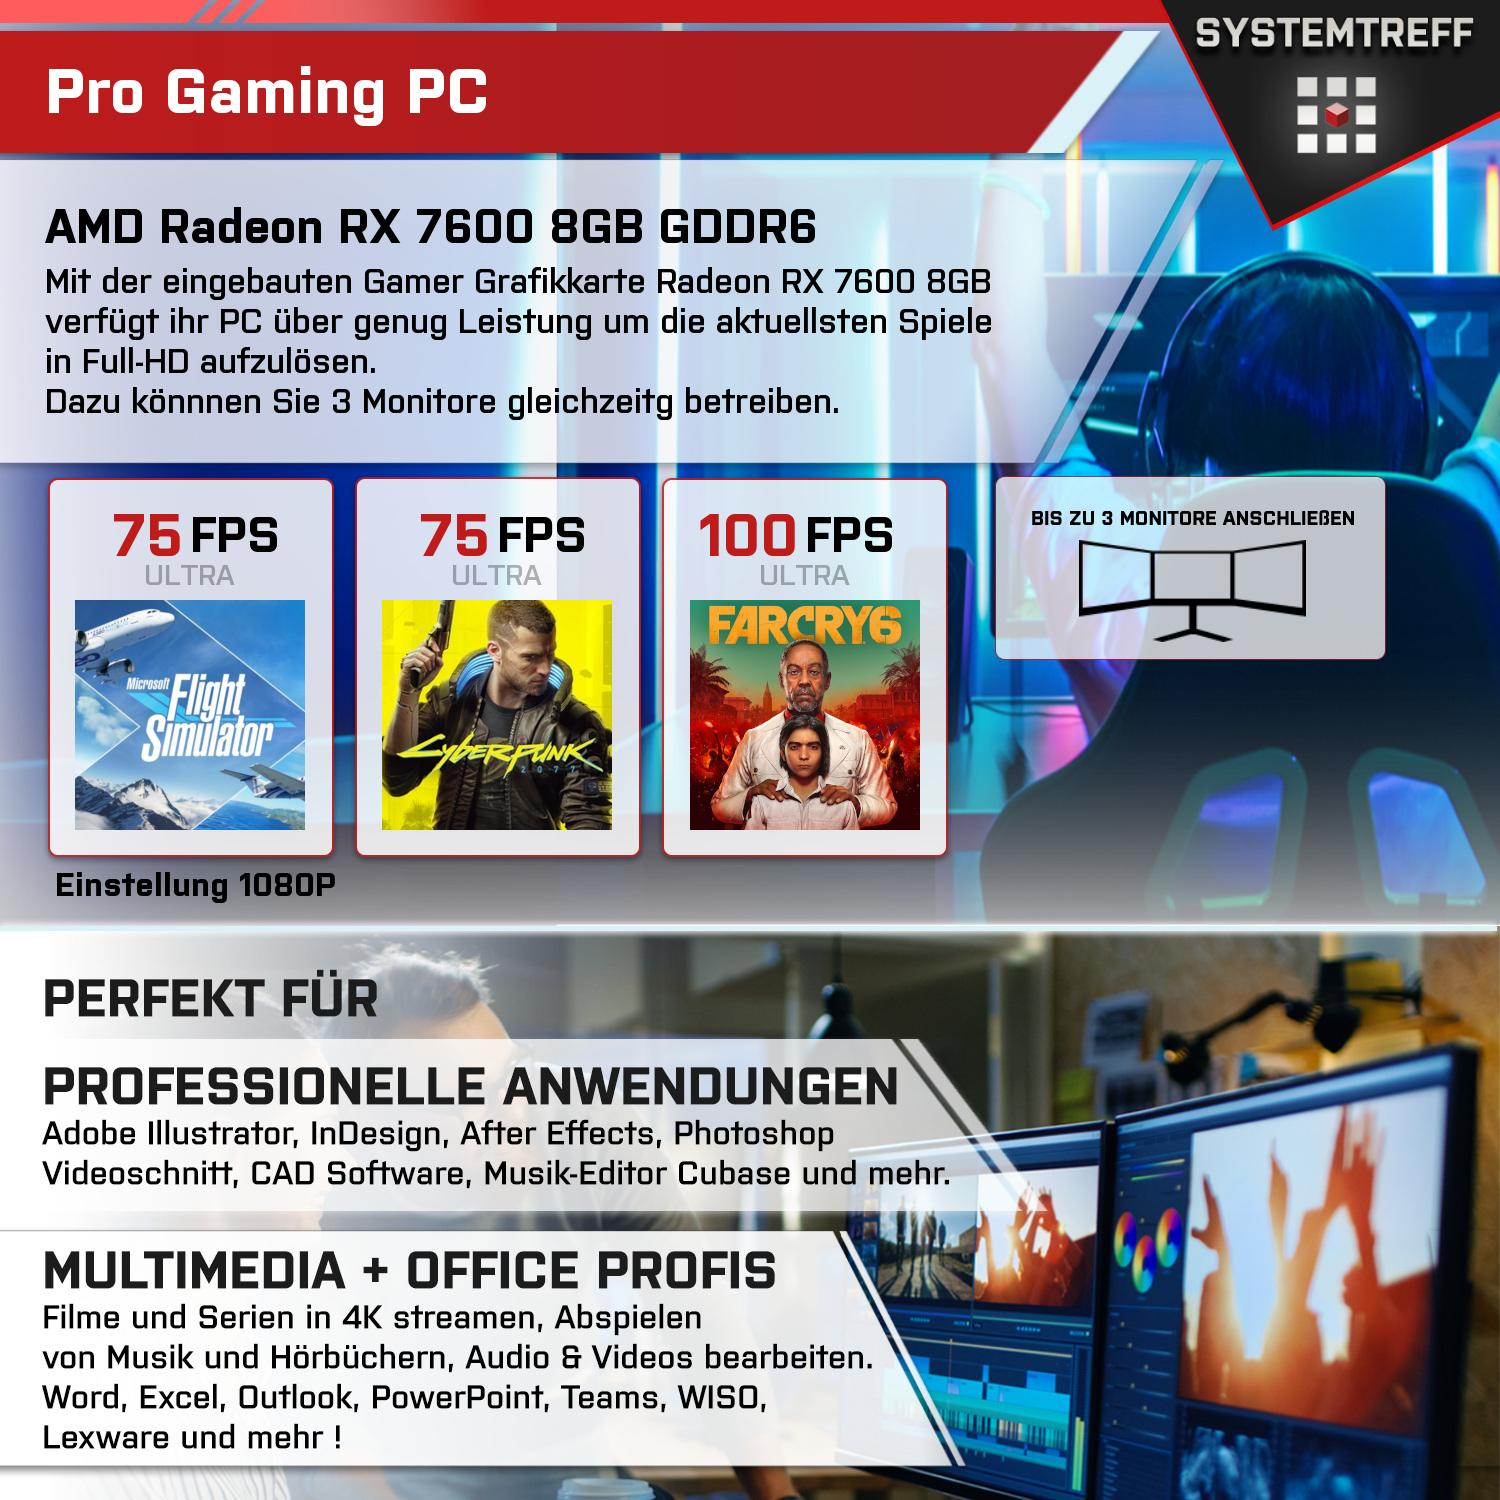 SYSTEMTREFF Gaming Komplett RAM, Intel 1000 Komplett mSSD, i5-12600KF Core Prozessor, PC GDDR6, i5-12600KF, GB RX 8 GB GB Radeon mit AMD 7600 16 8GB